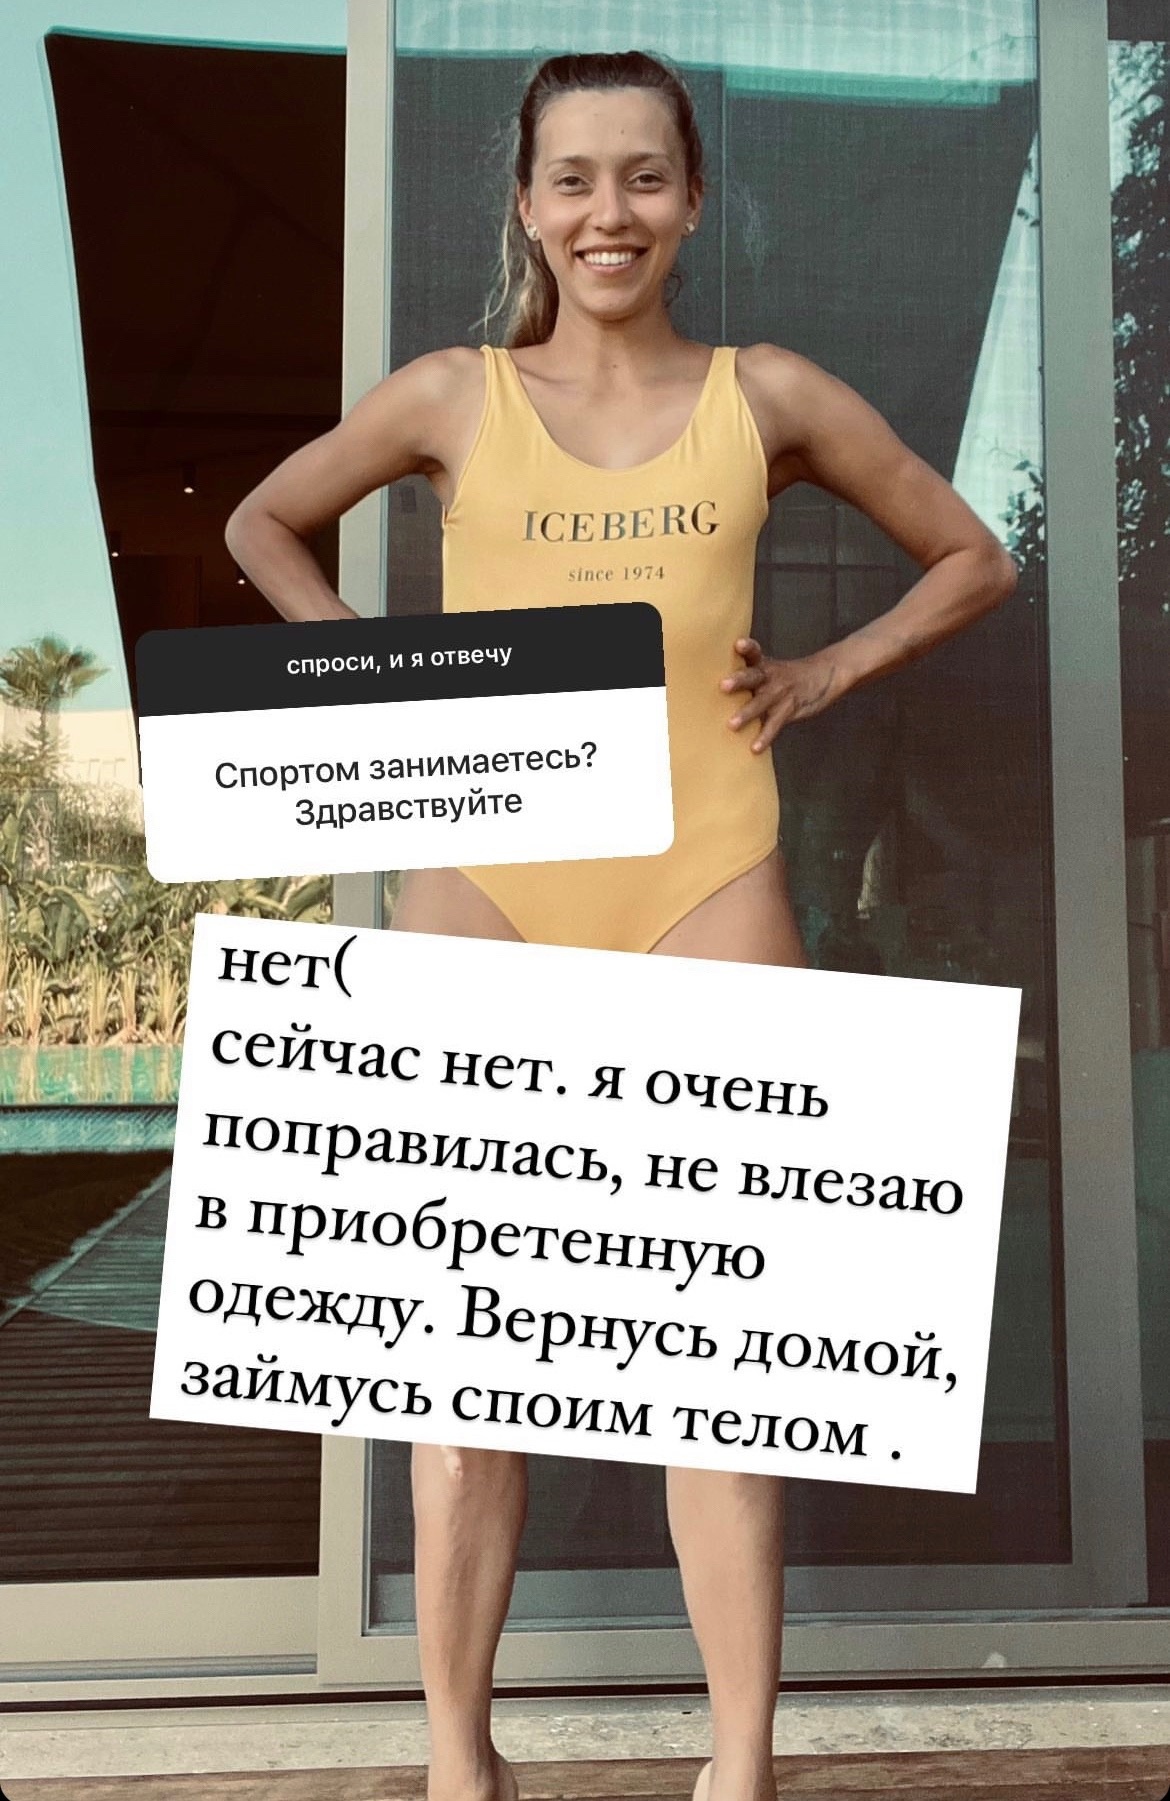 "Не влезаю в одежду": Регина Тодоренко пожаловалась на лишний вес
